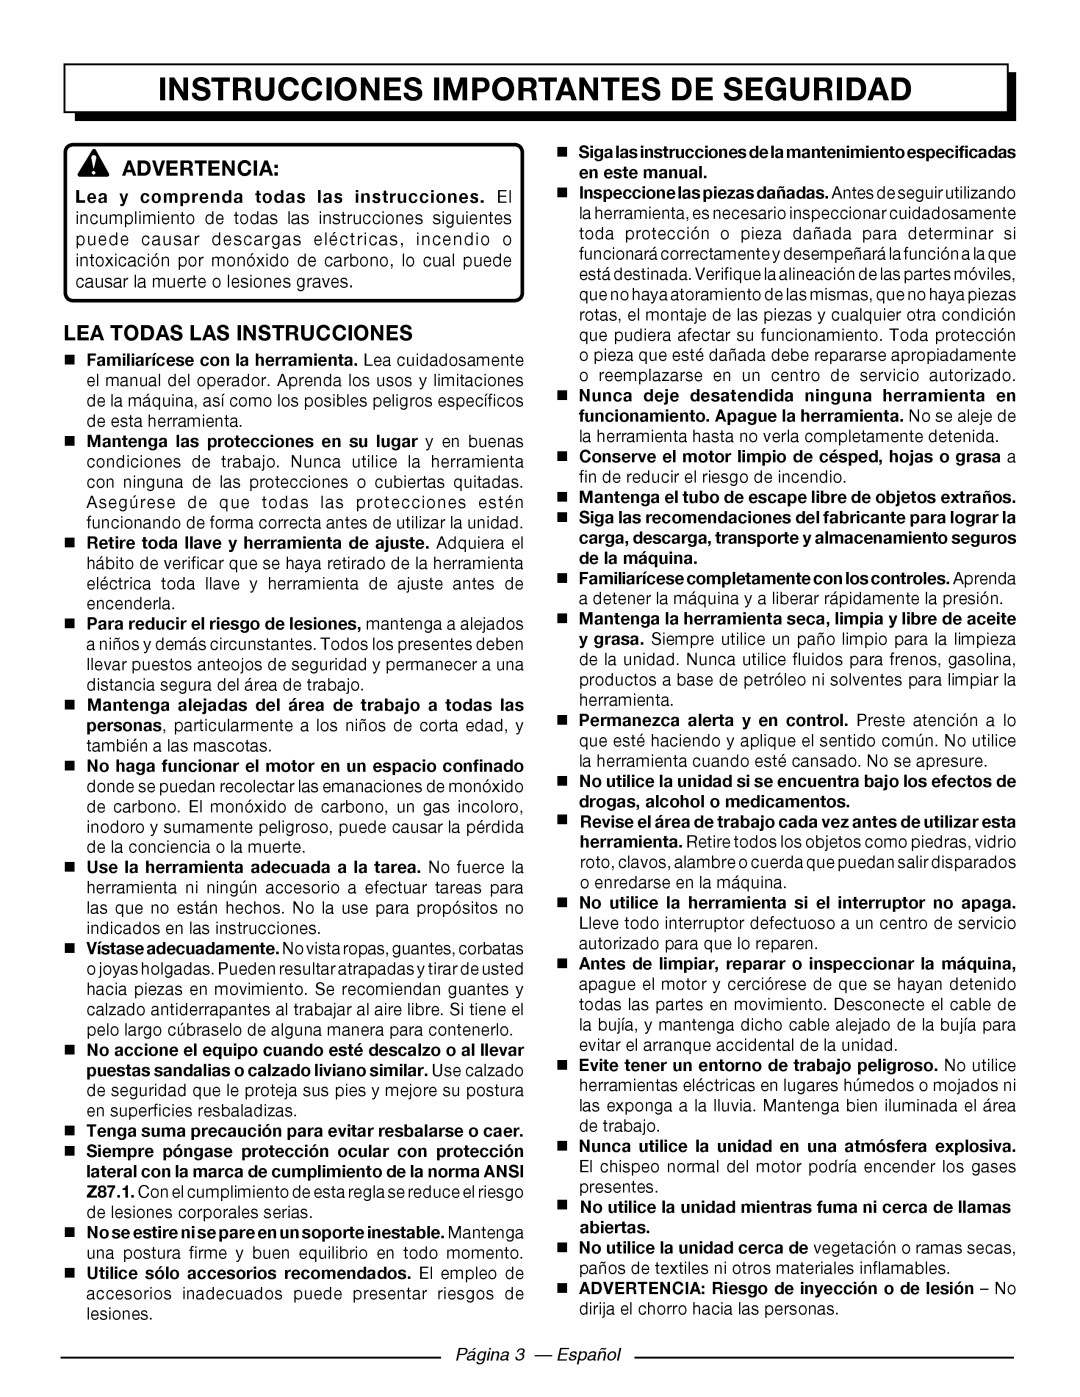 Homelite UT80522 Instrucciones Importantes De Seguridad, Advertencia, Lea Todas Las Instrucciones, Página 3 - Español 